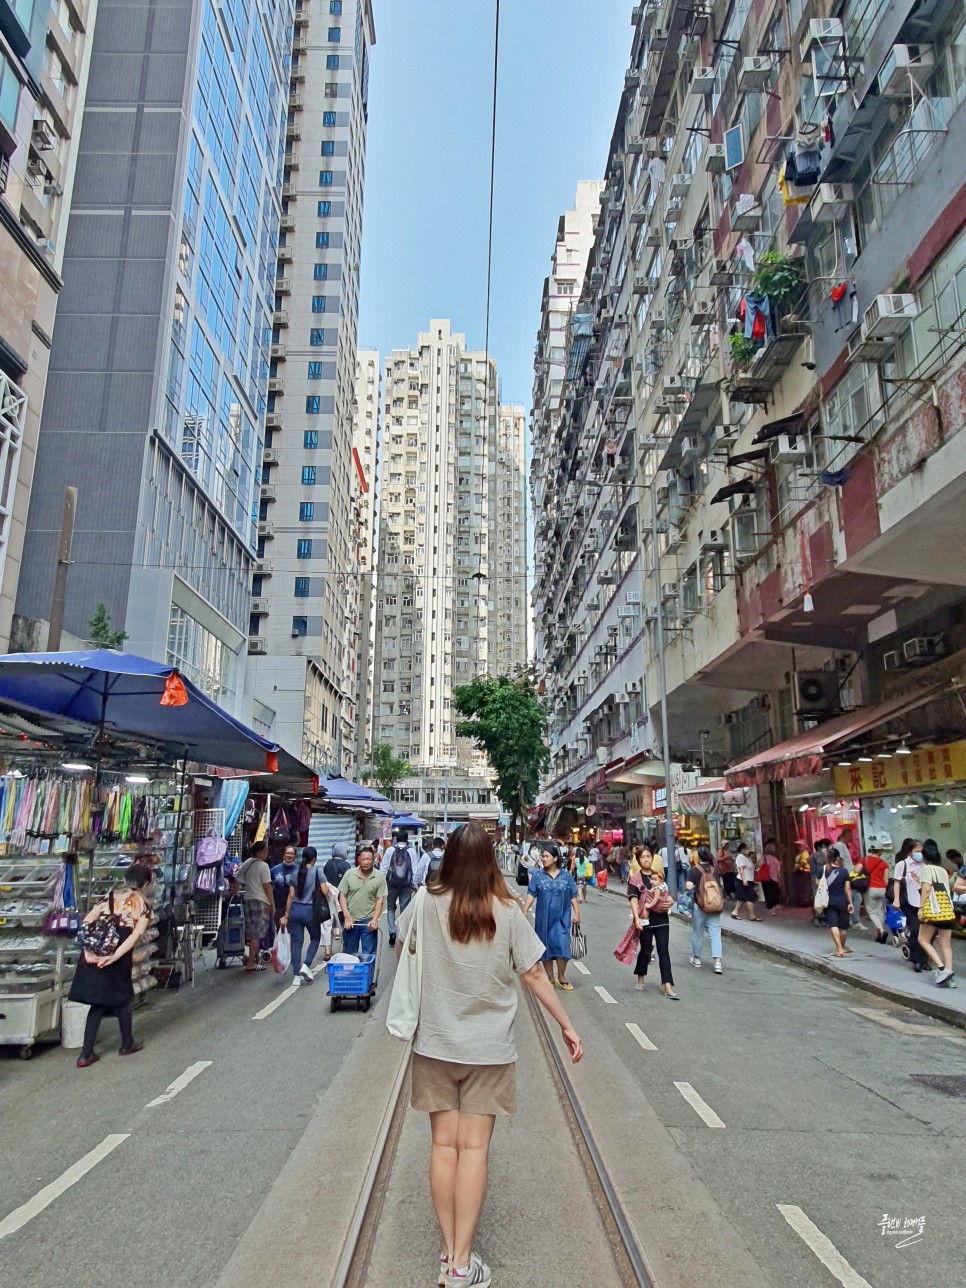 홍콩 자유여행 가볼만한곳 노스포인트 춘영 스트리트 마켓